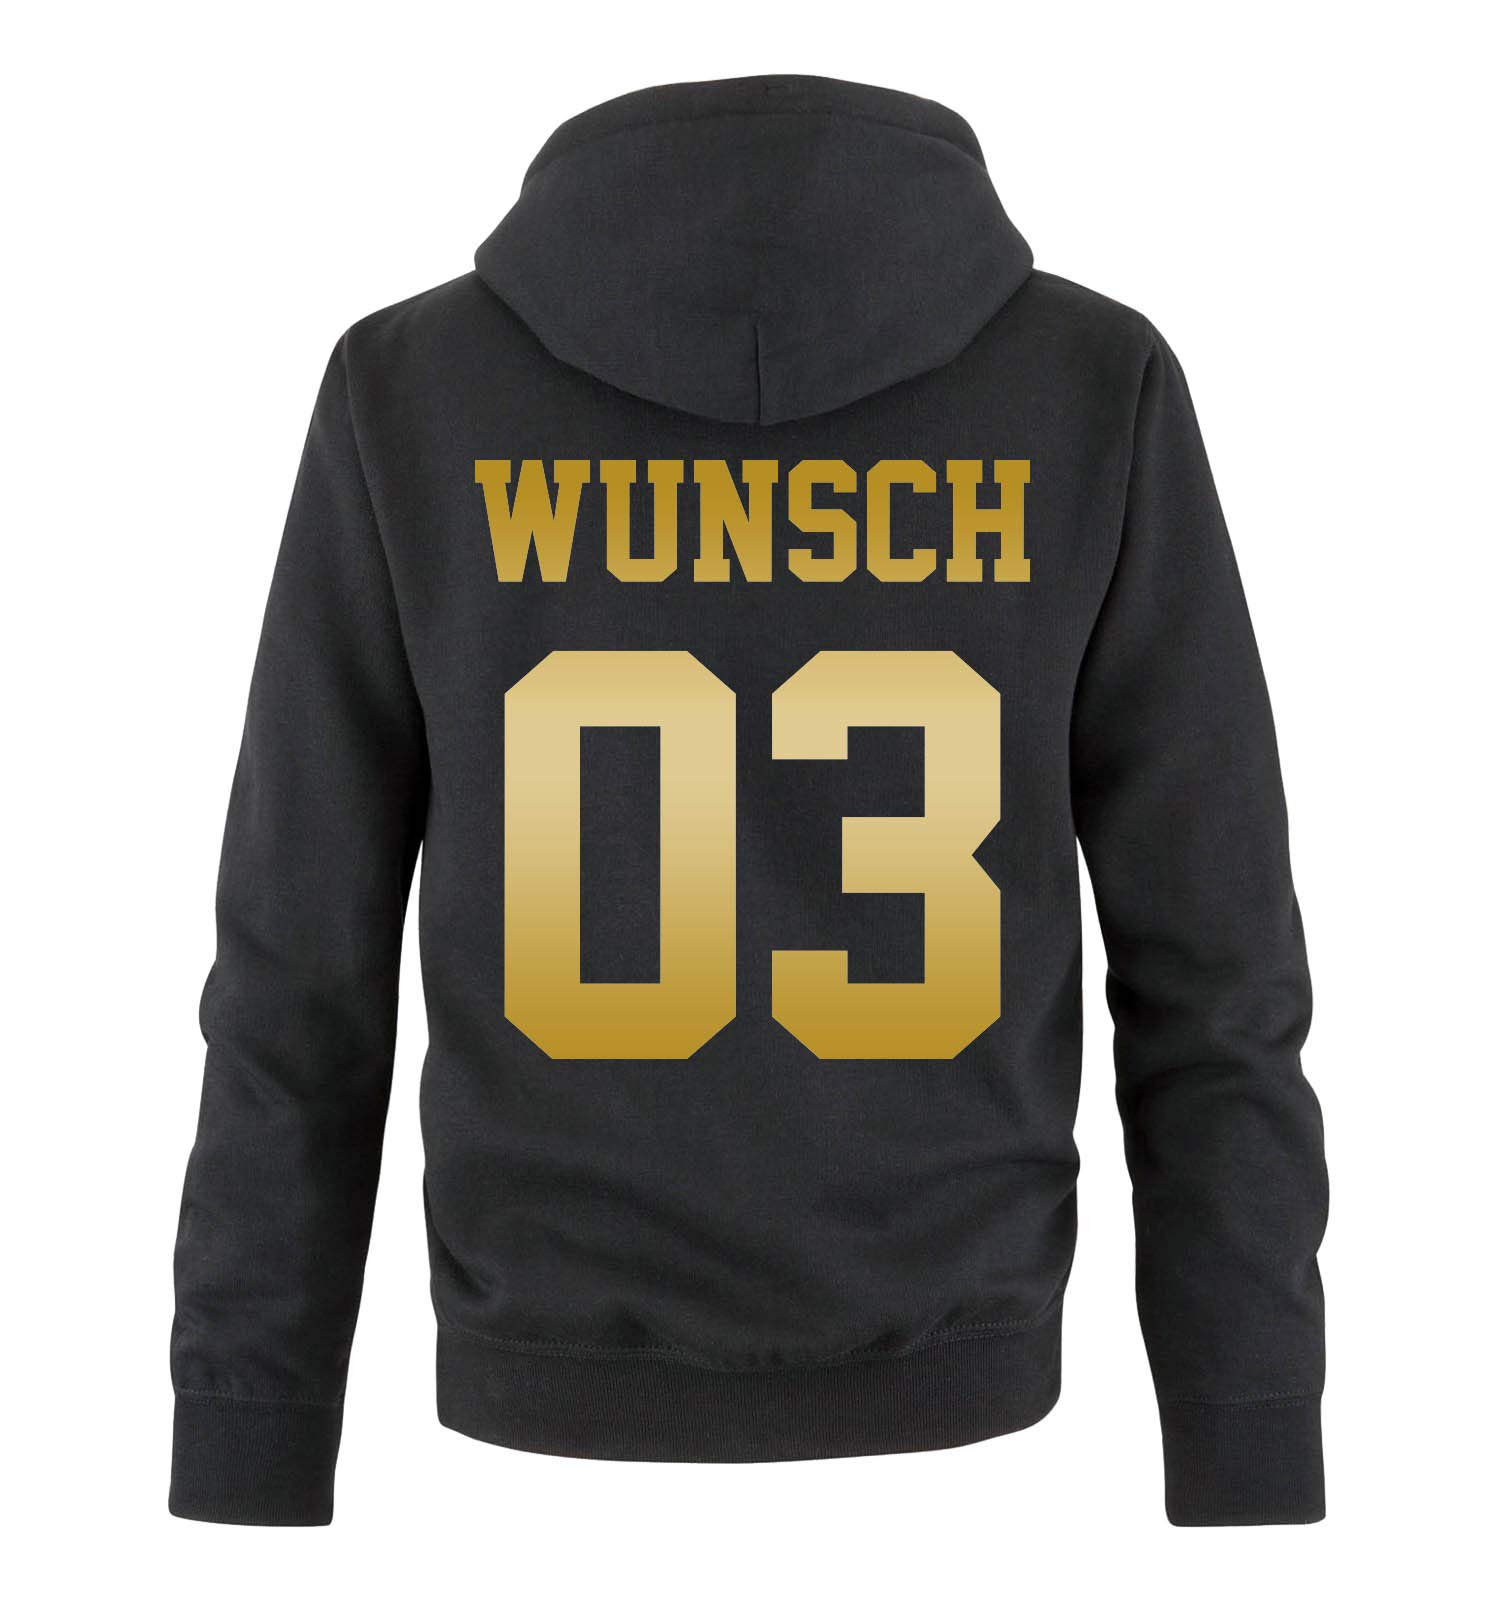 Comedy Shirts - Wunsch - Herren Hoodie - Schwarz/Gold - Gr. XXL